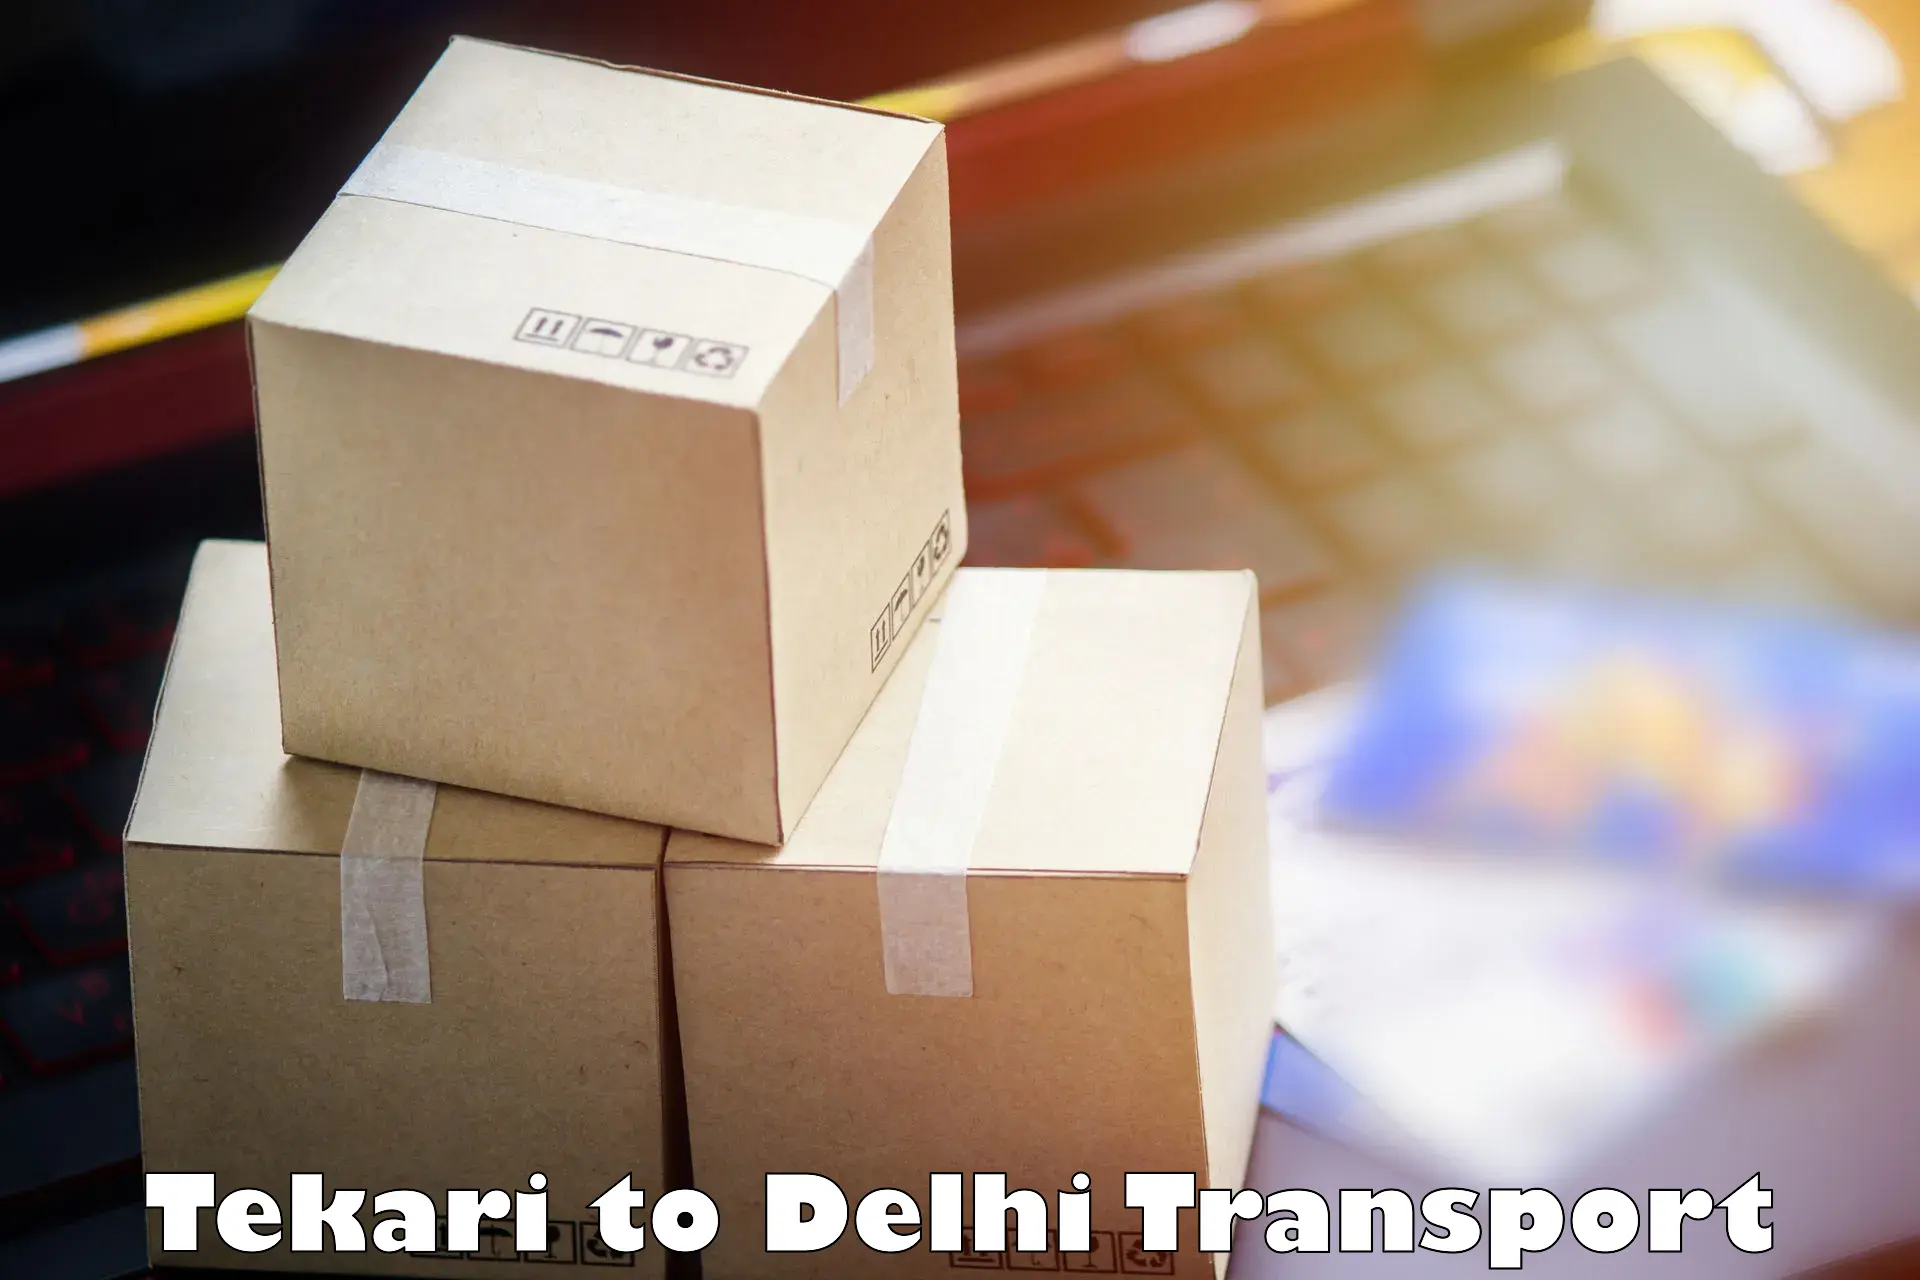 Shipping partner Tekari to East Delhi